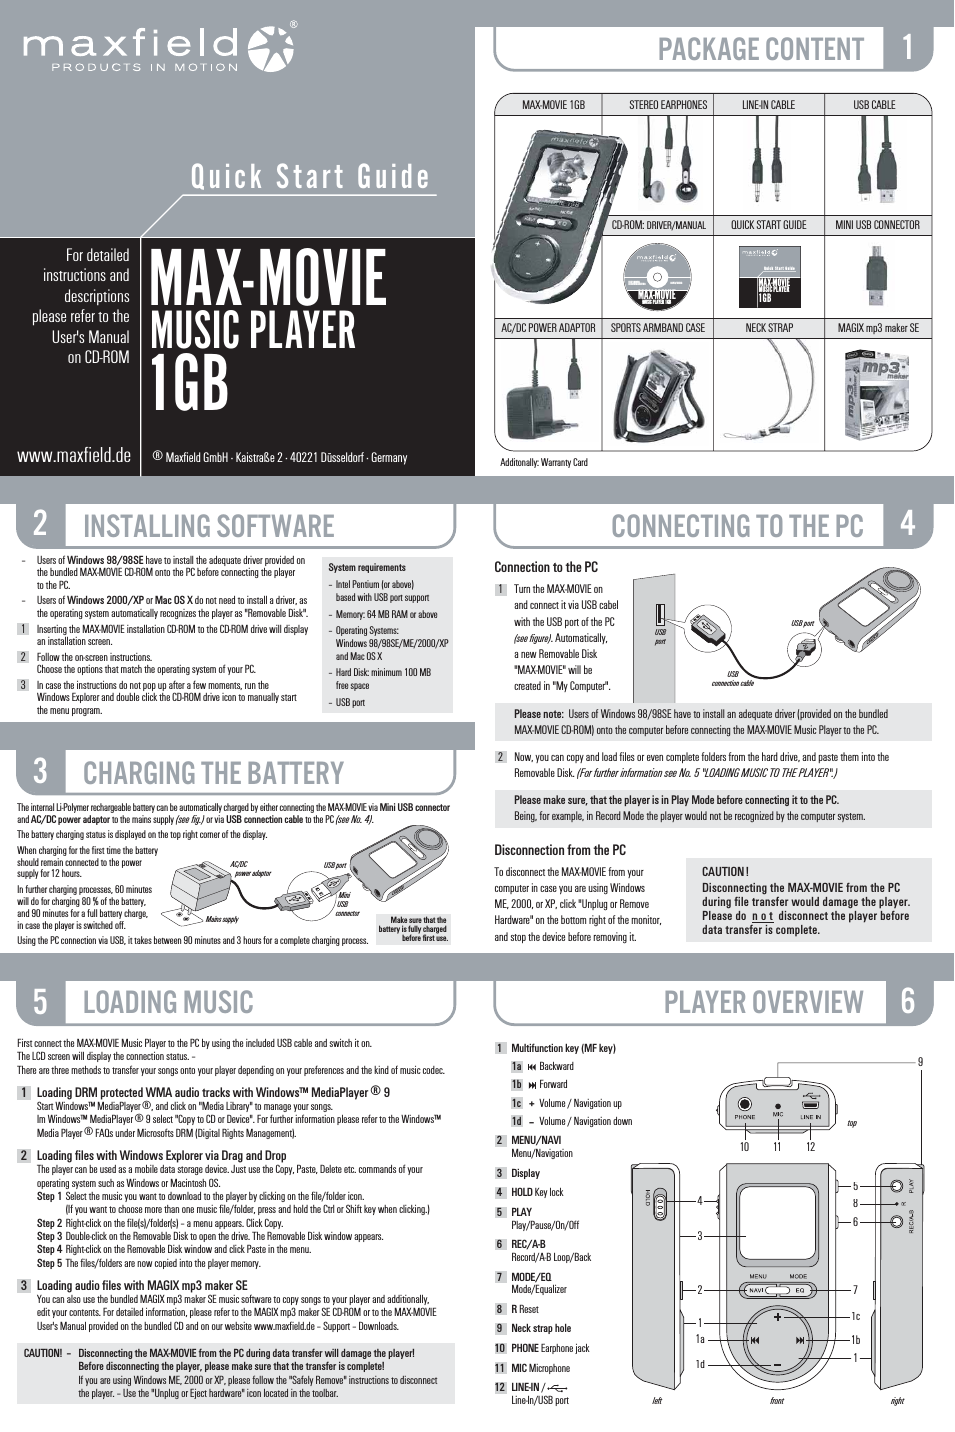 Max-Movie 1GB